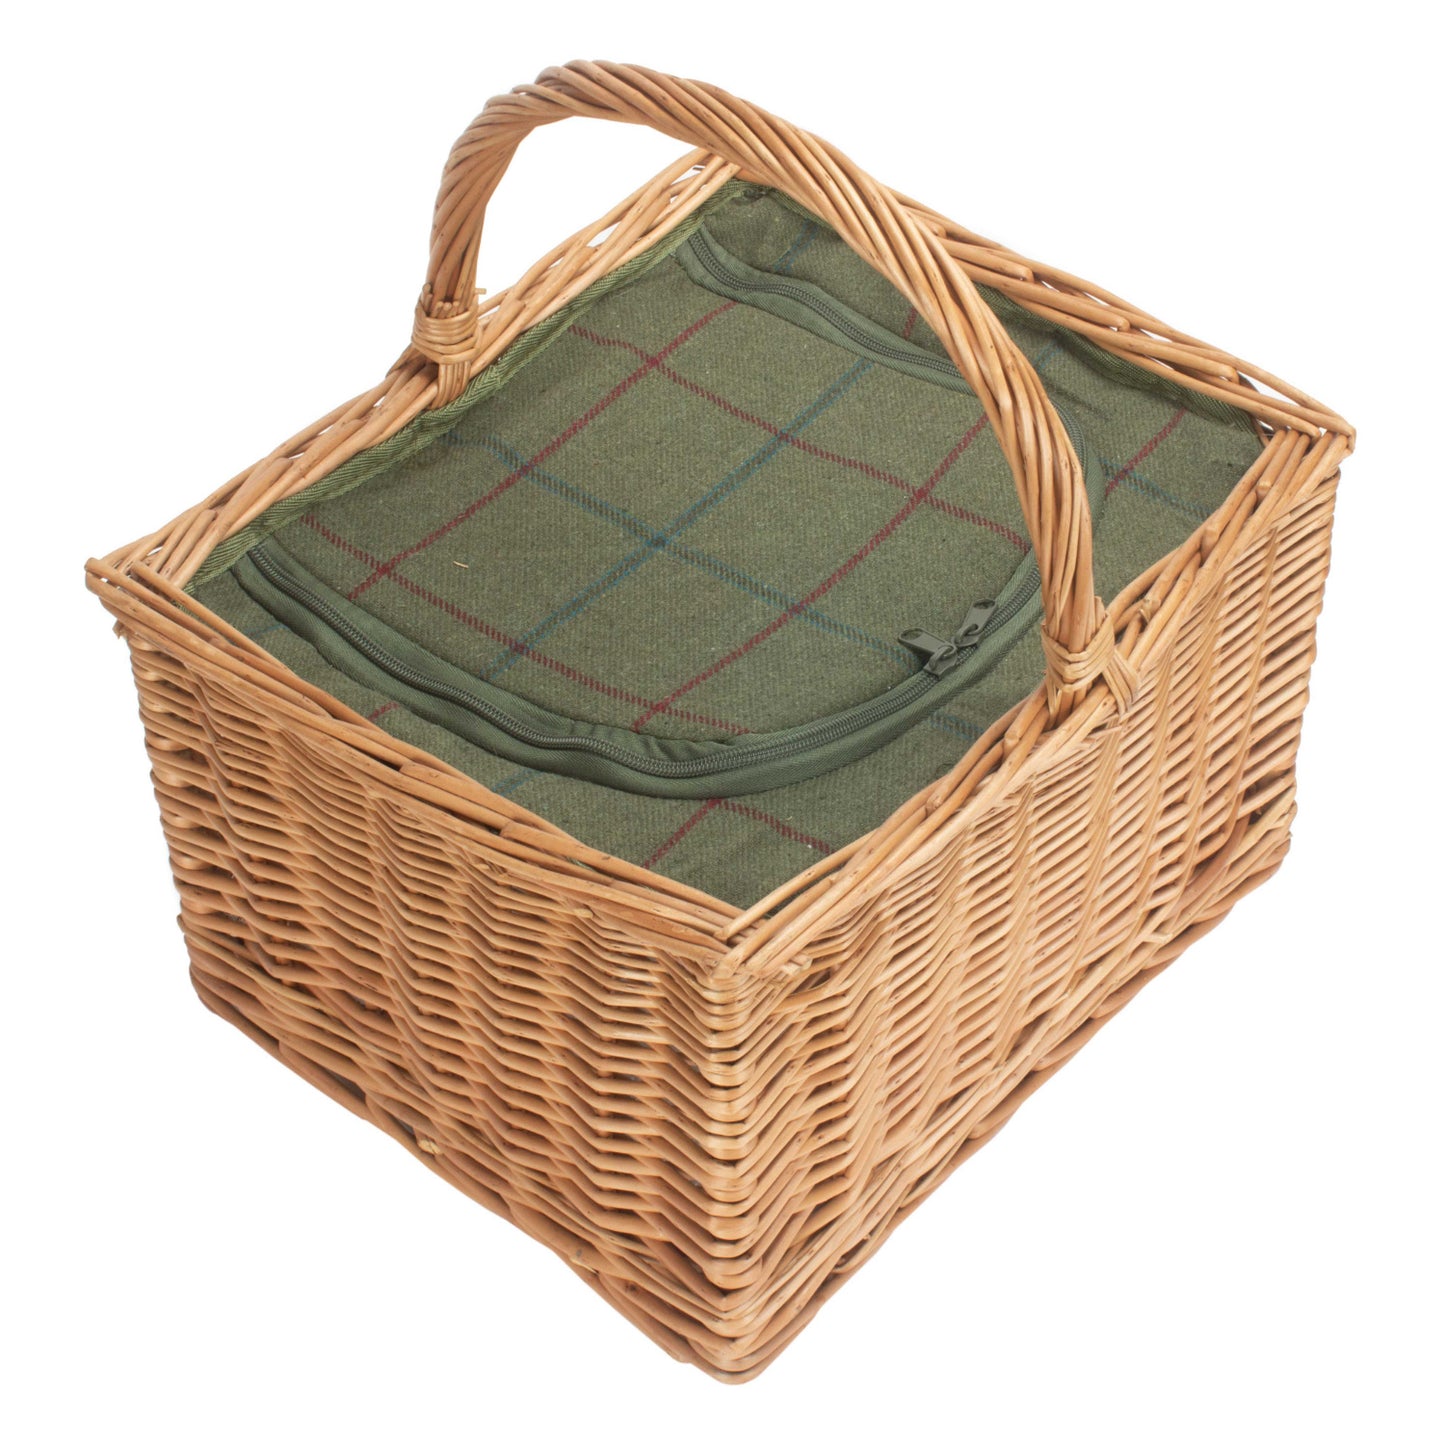 Deluxe Butcher's Basket With Green Tweed Cooler Bag